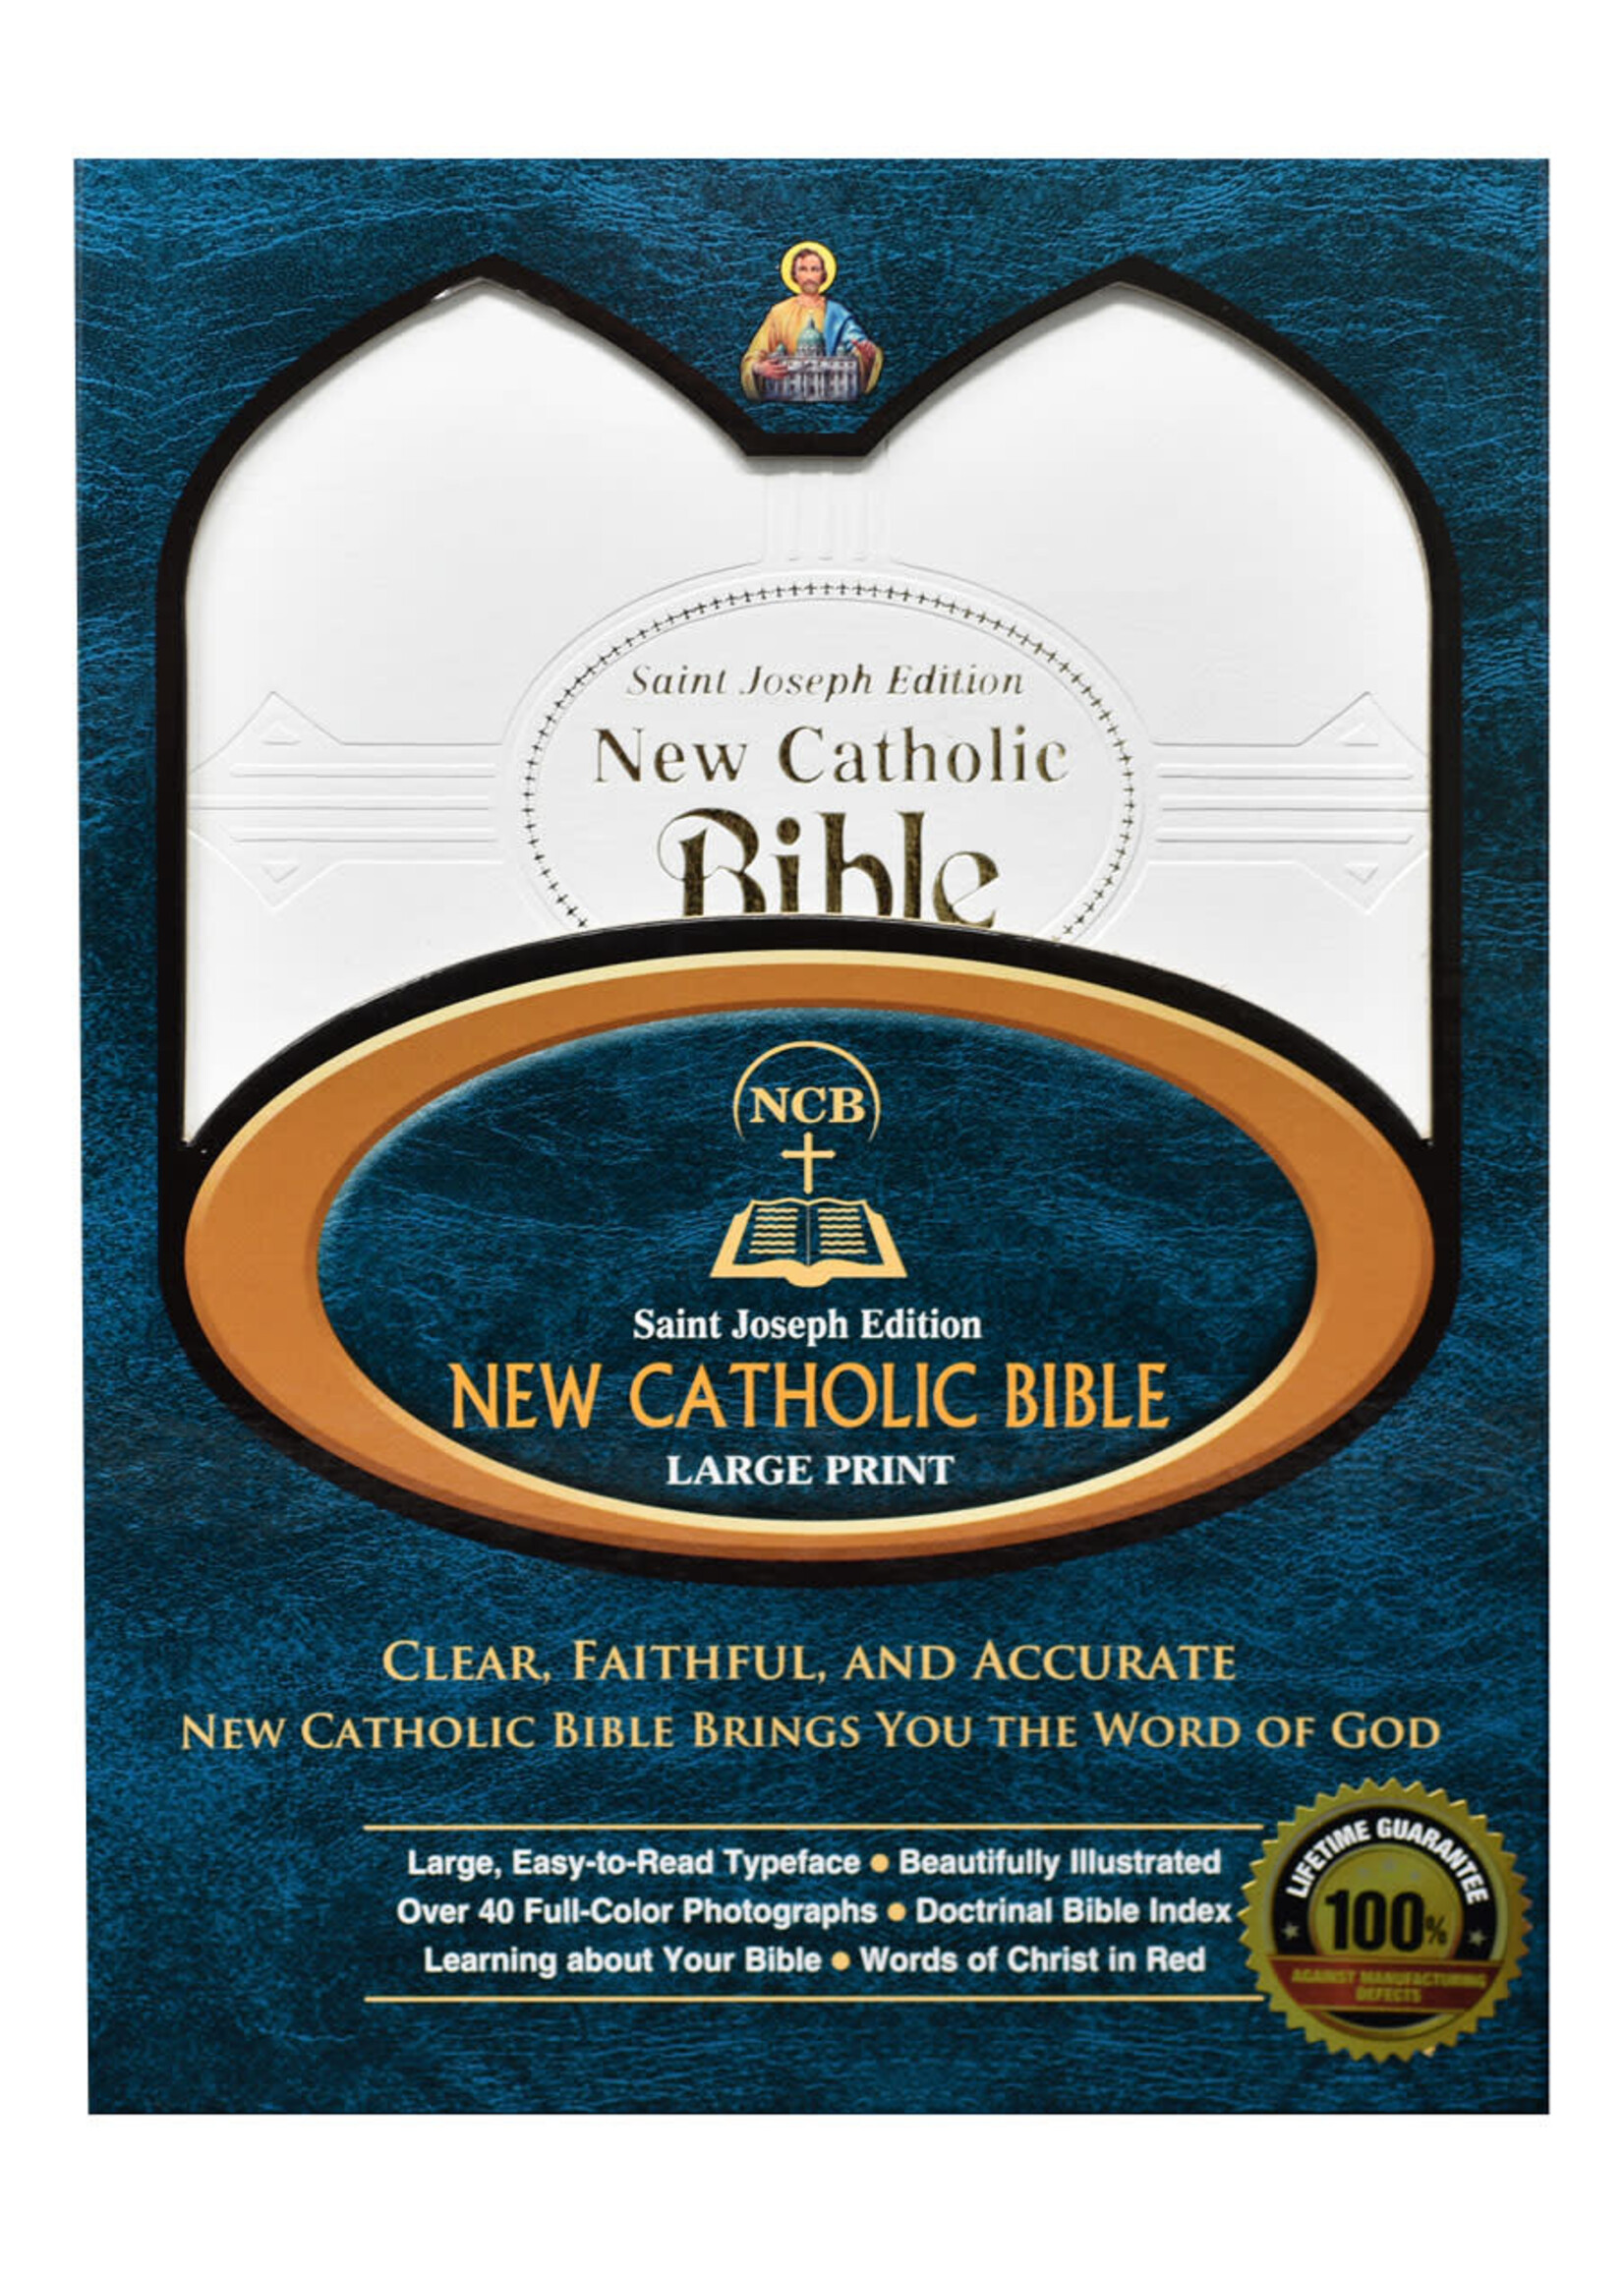 St Joseph New Catholic Bible (Gift Edition - Large Type)